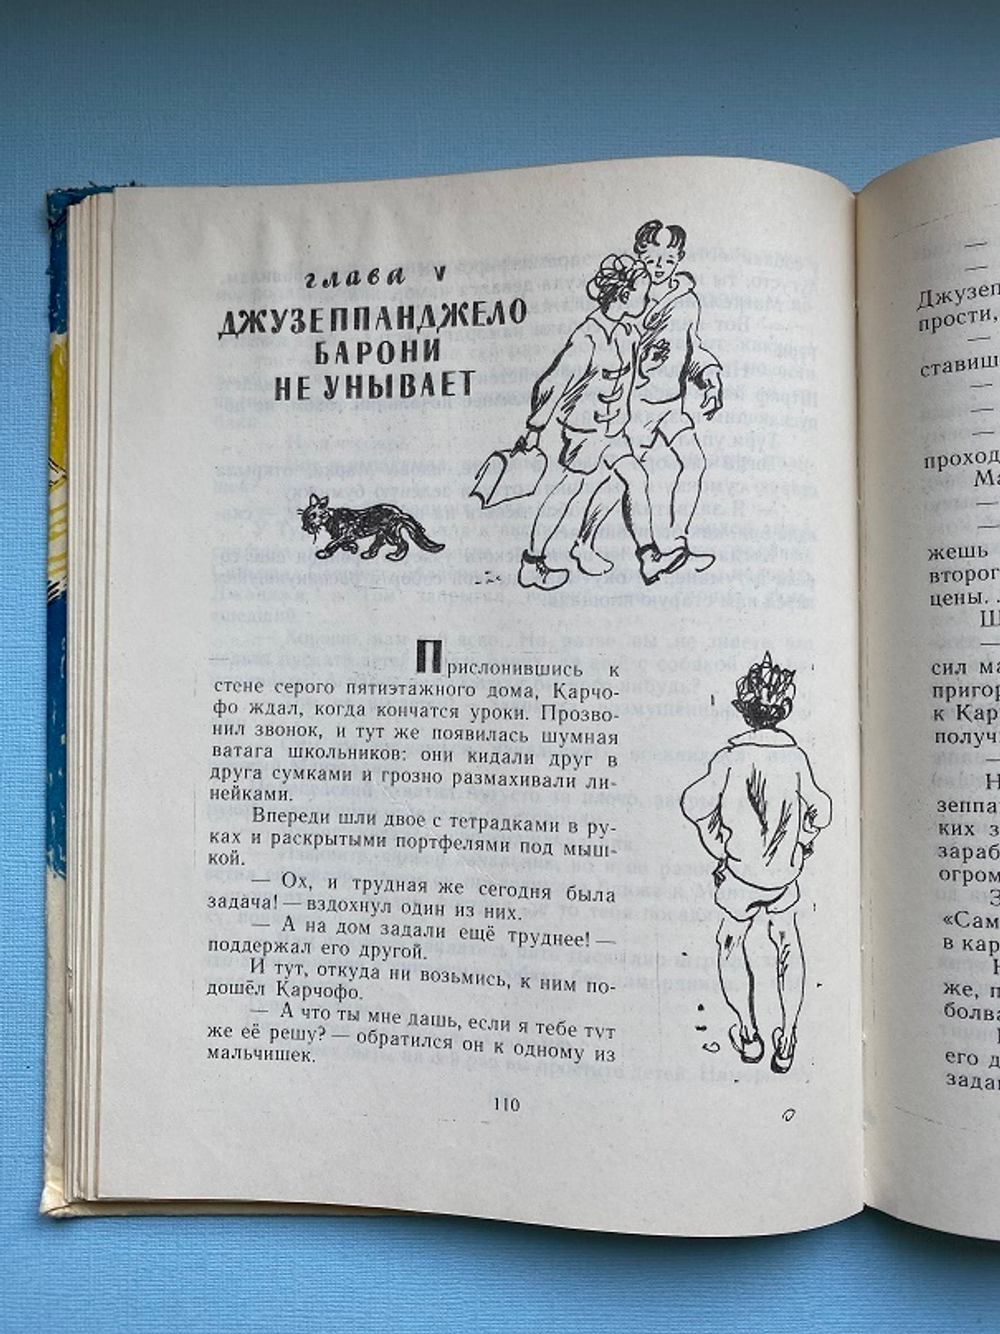 Р Реджани, Пятеро ребят и одна собака, Детская литература, 1973 г